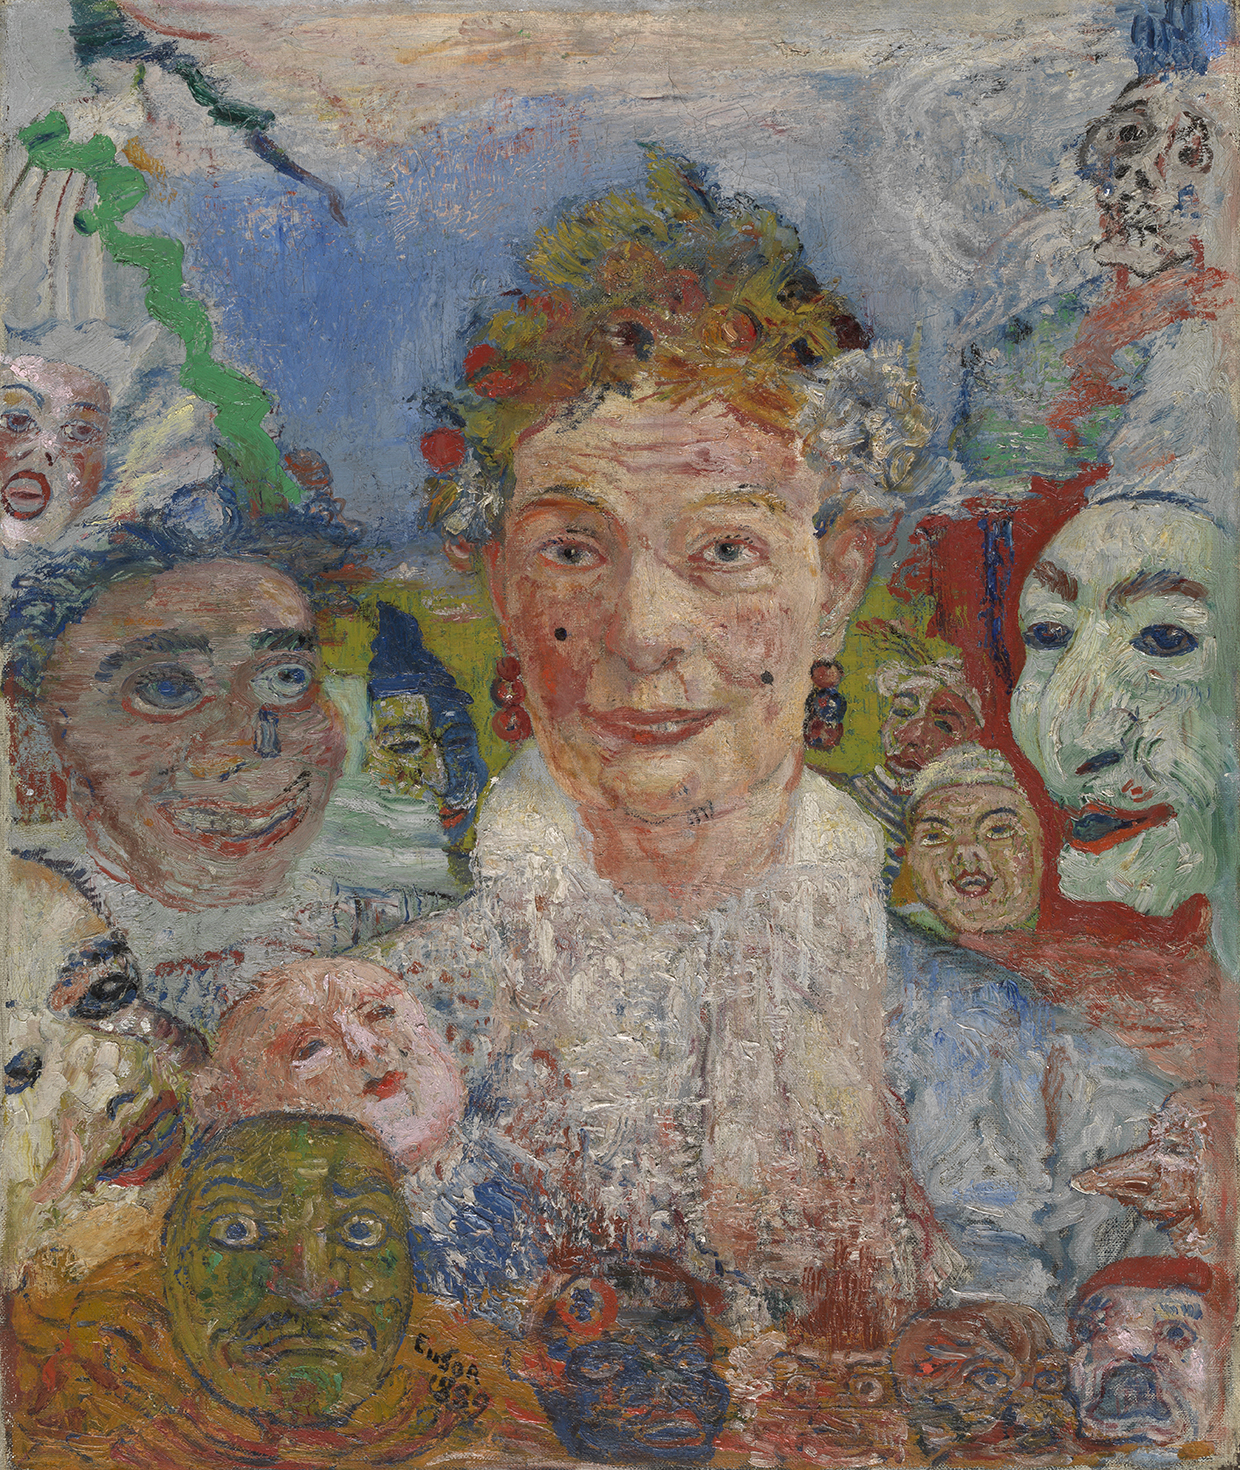 Schilderij De oude dame met de maskers van James Ensor, MSK Gent